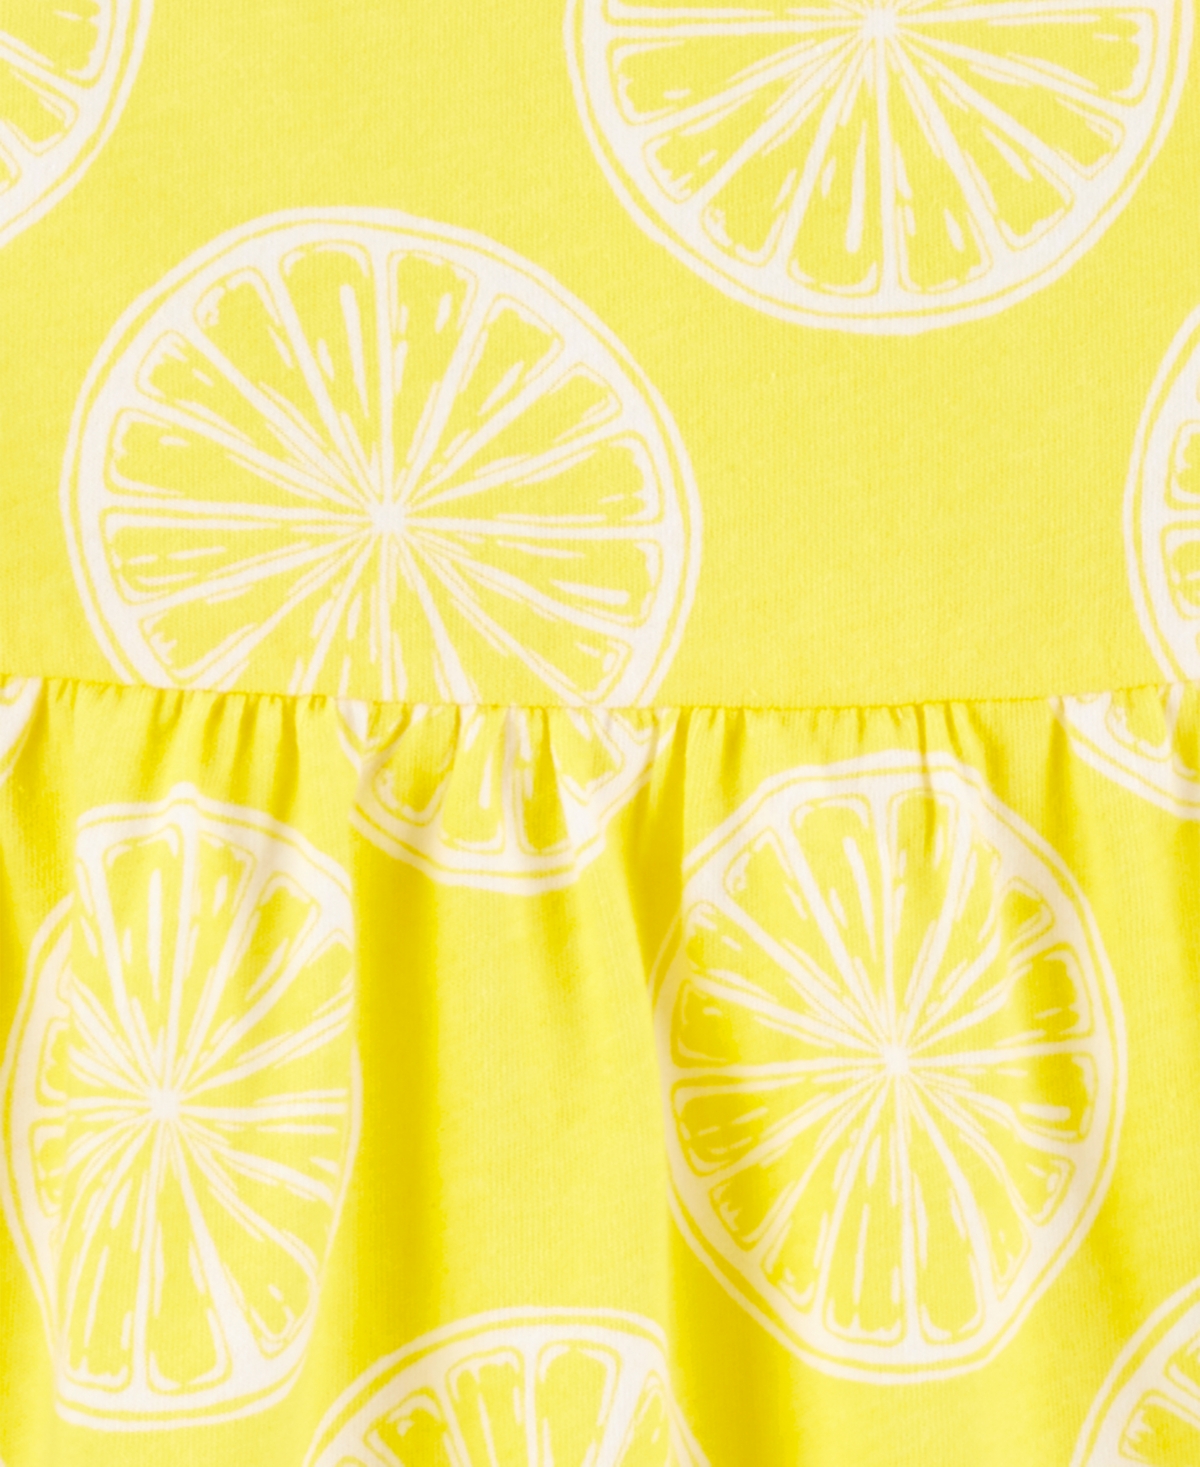 Shop Carter's Toddler Girls Lemon-print Cotton Tank Dress In Yellow